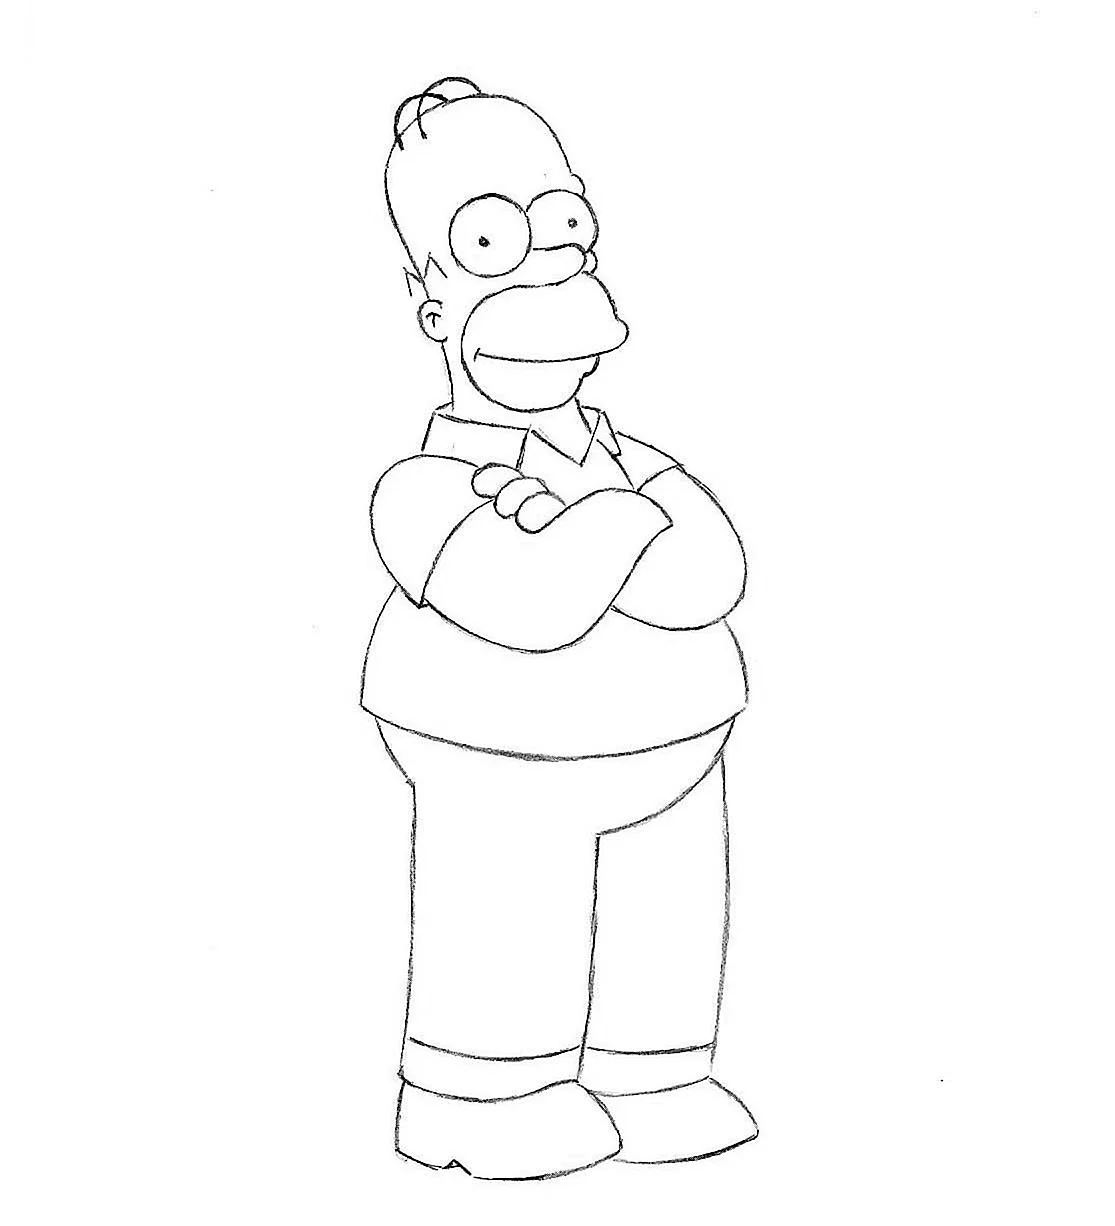 Срисовать Симпсонов Гомера